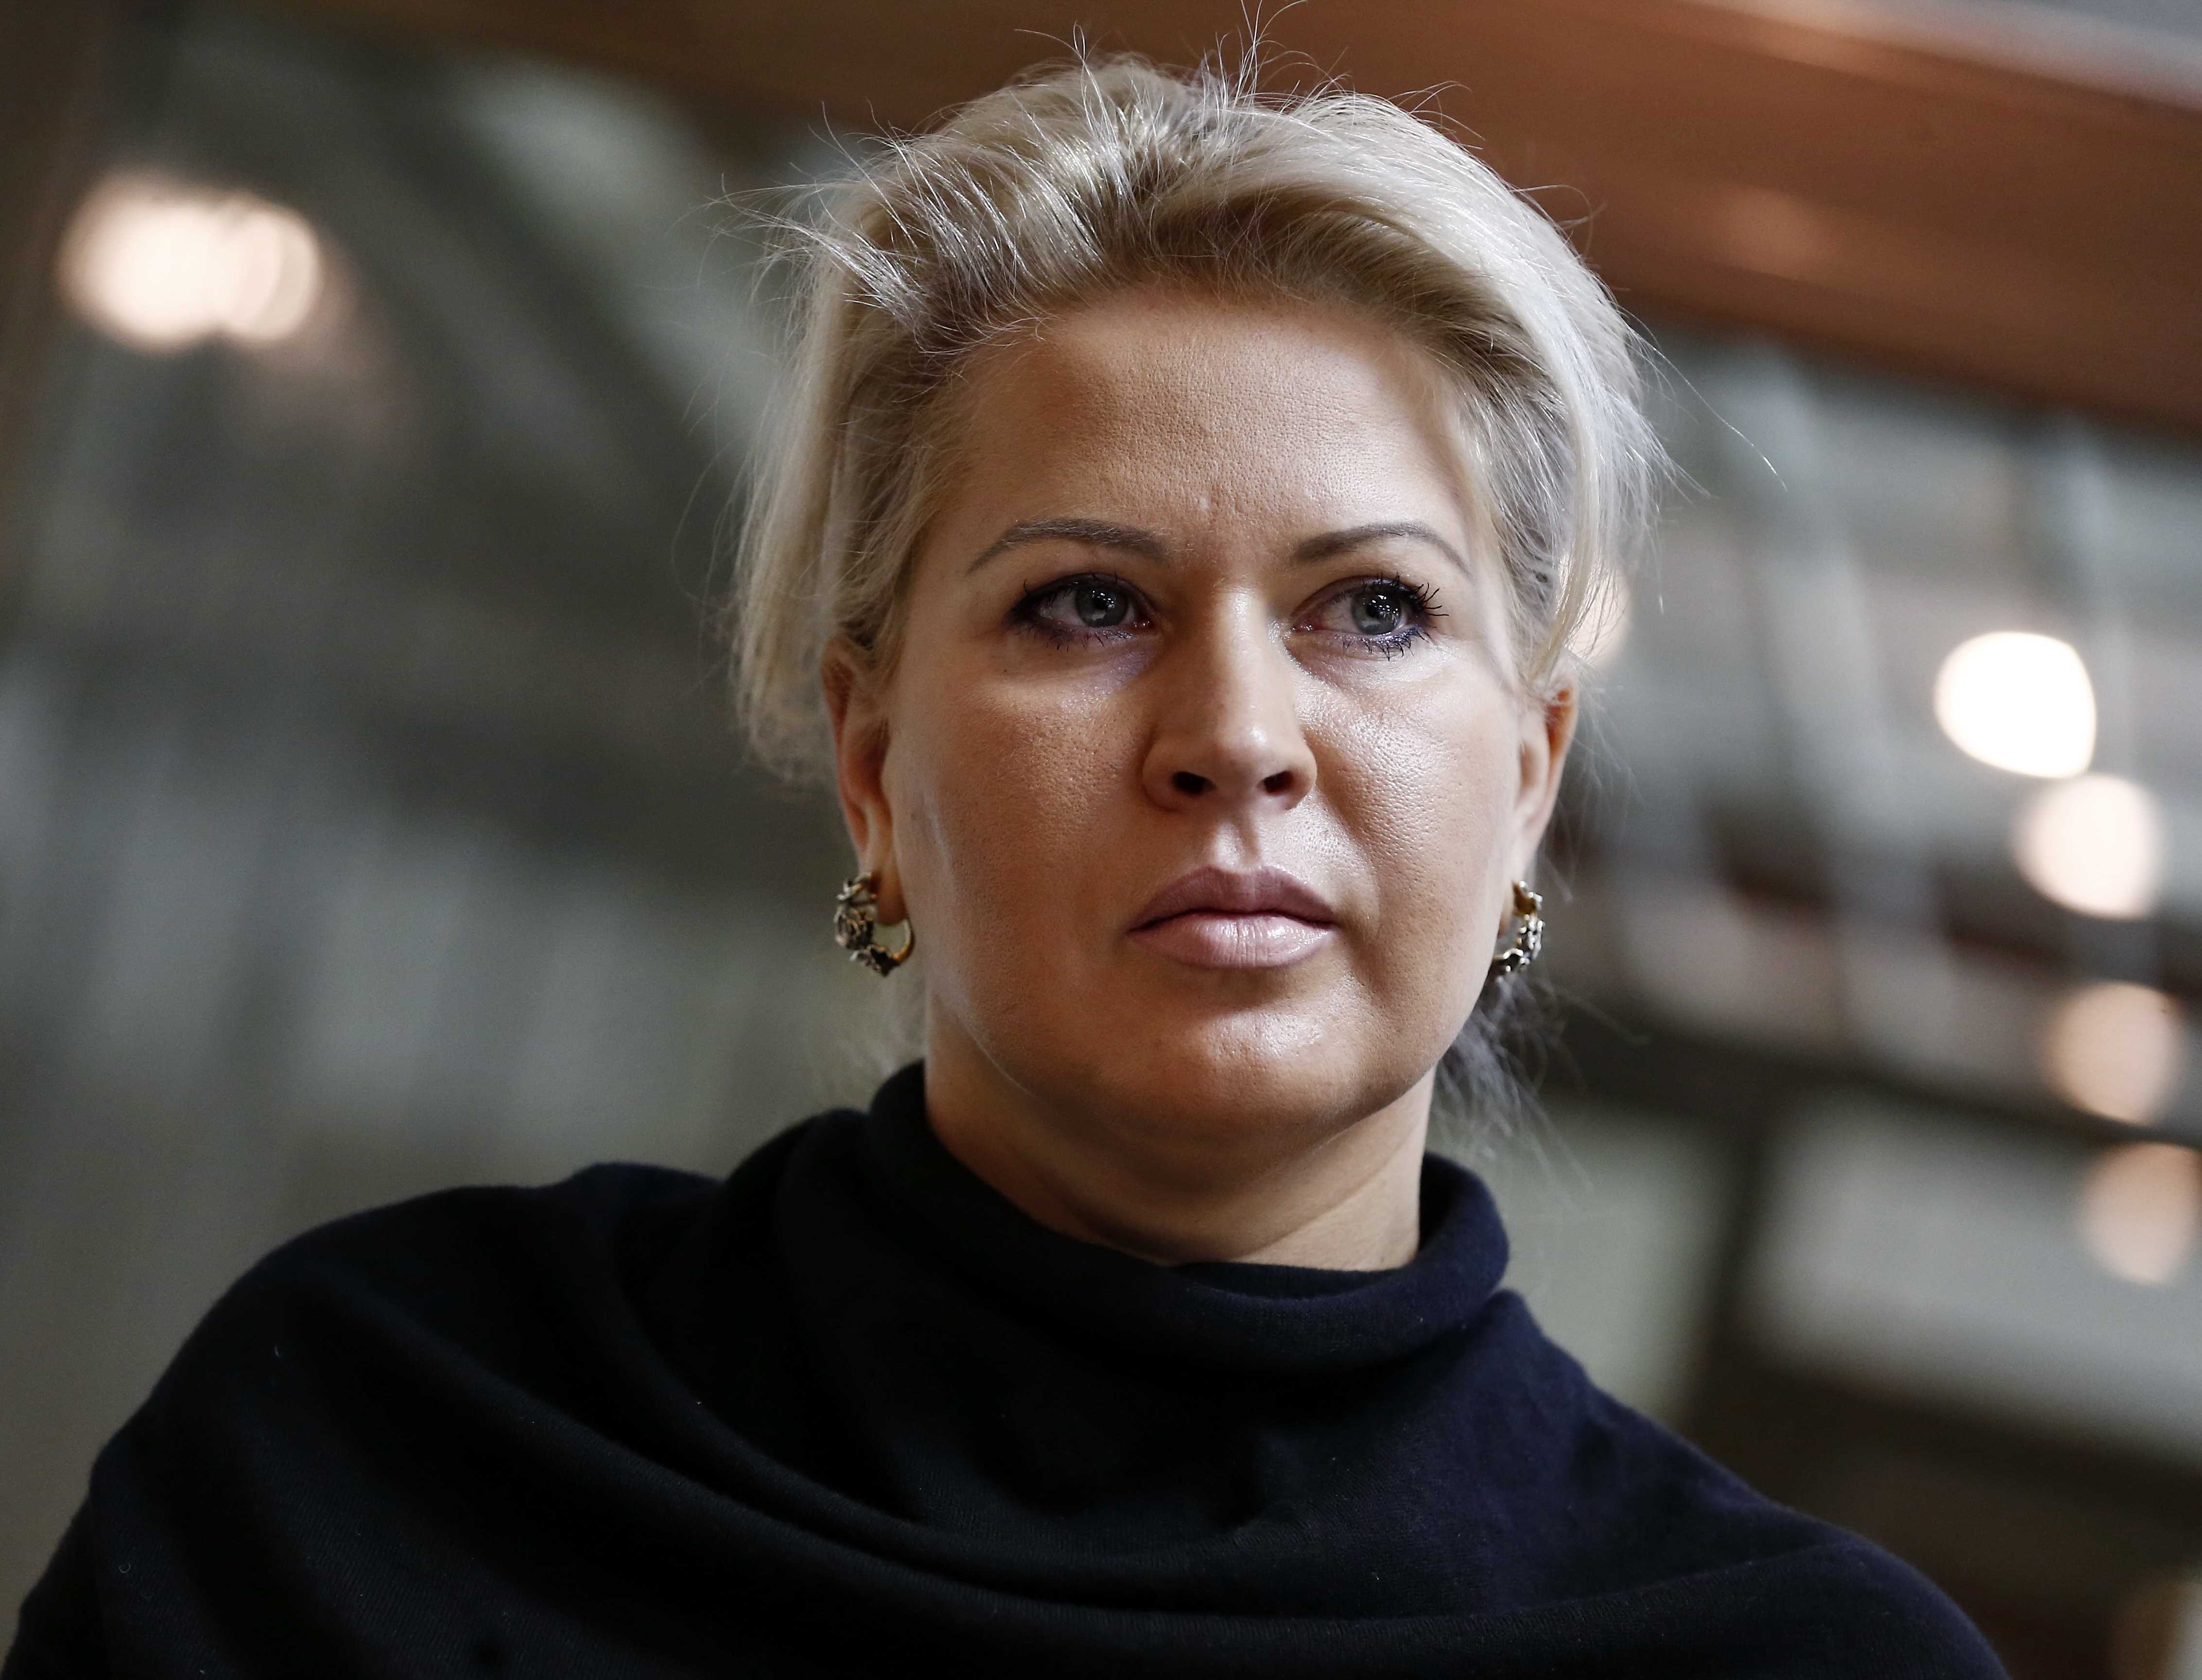 Расследование: действительно ли Светлана Медведева является двоюродной сестрой Евгении Васильевой, обвиняемой в хищении средств в Оборонсервисе